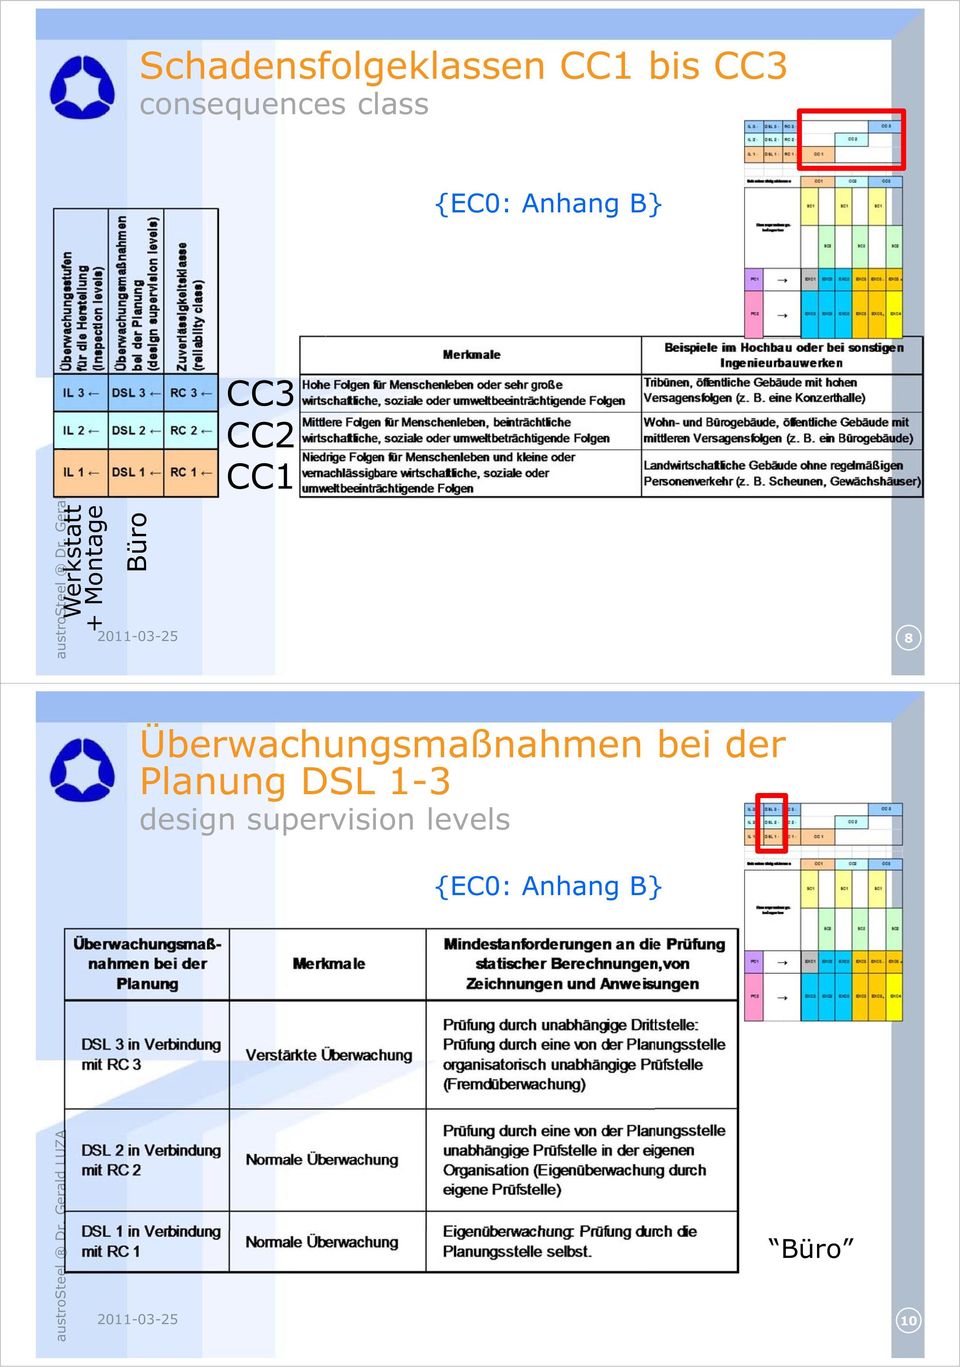 Überwachungsmaßnahmen bei der Planung DSL 1-3 design